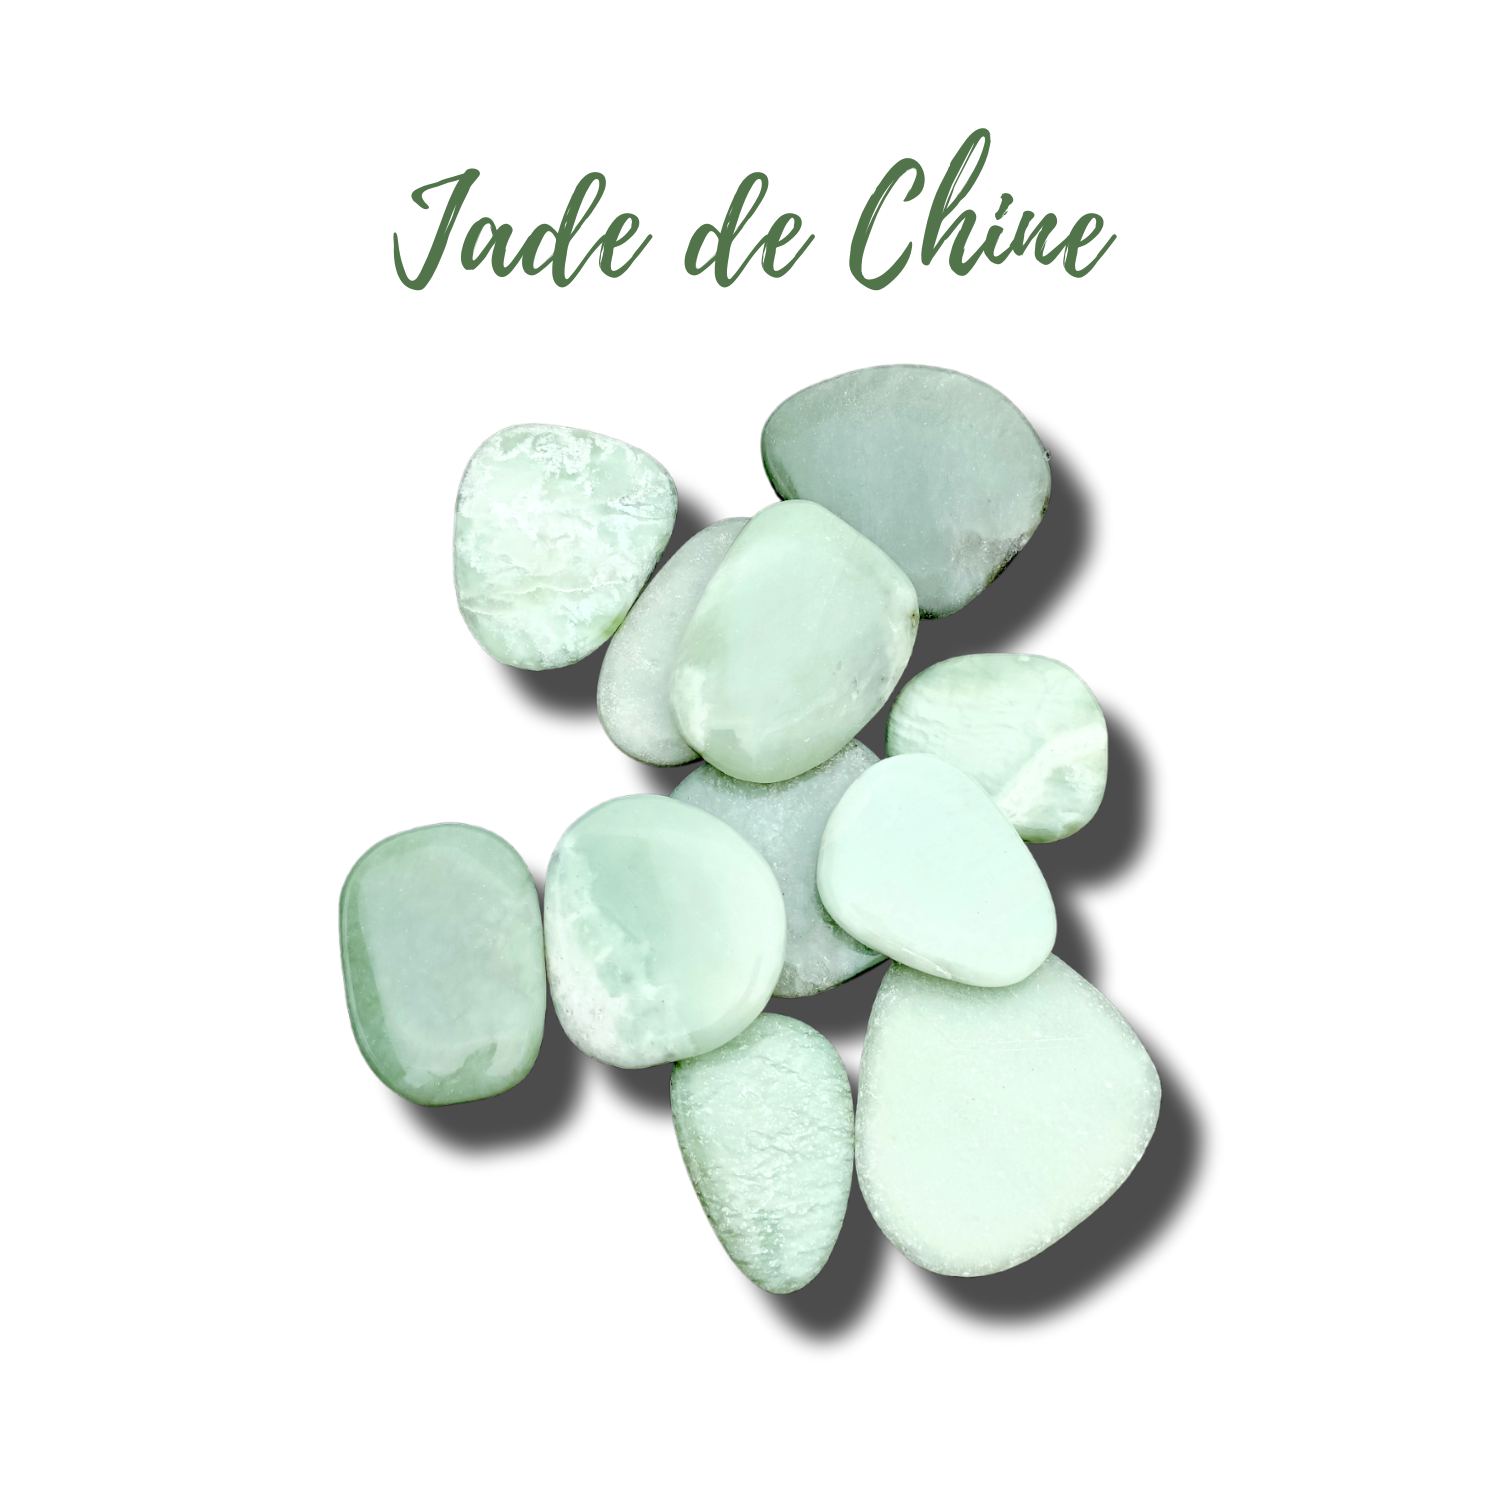 Jade de Chine